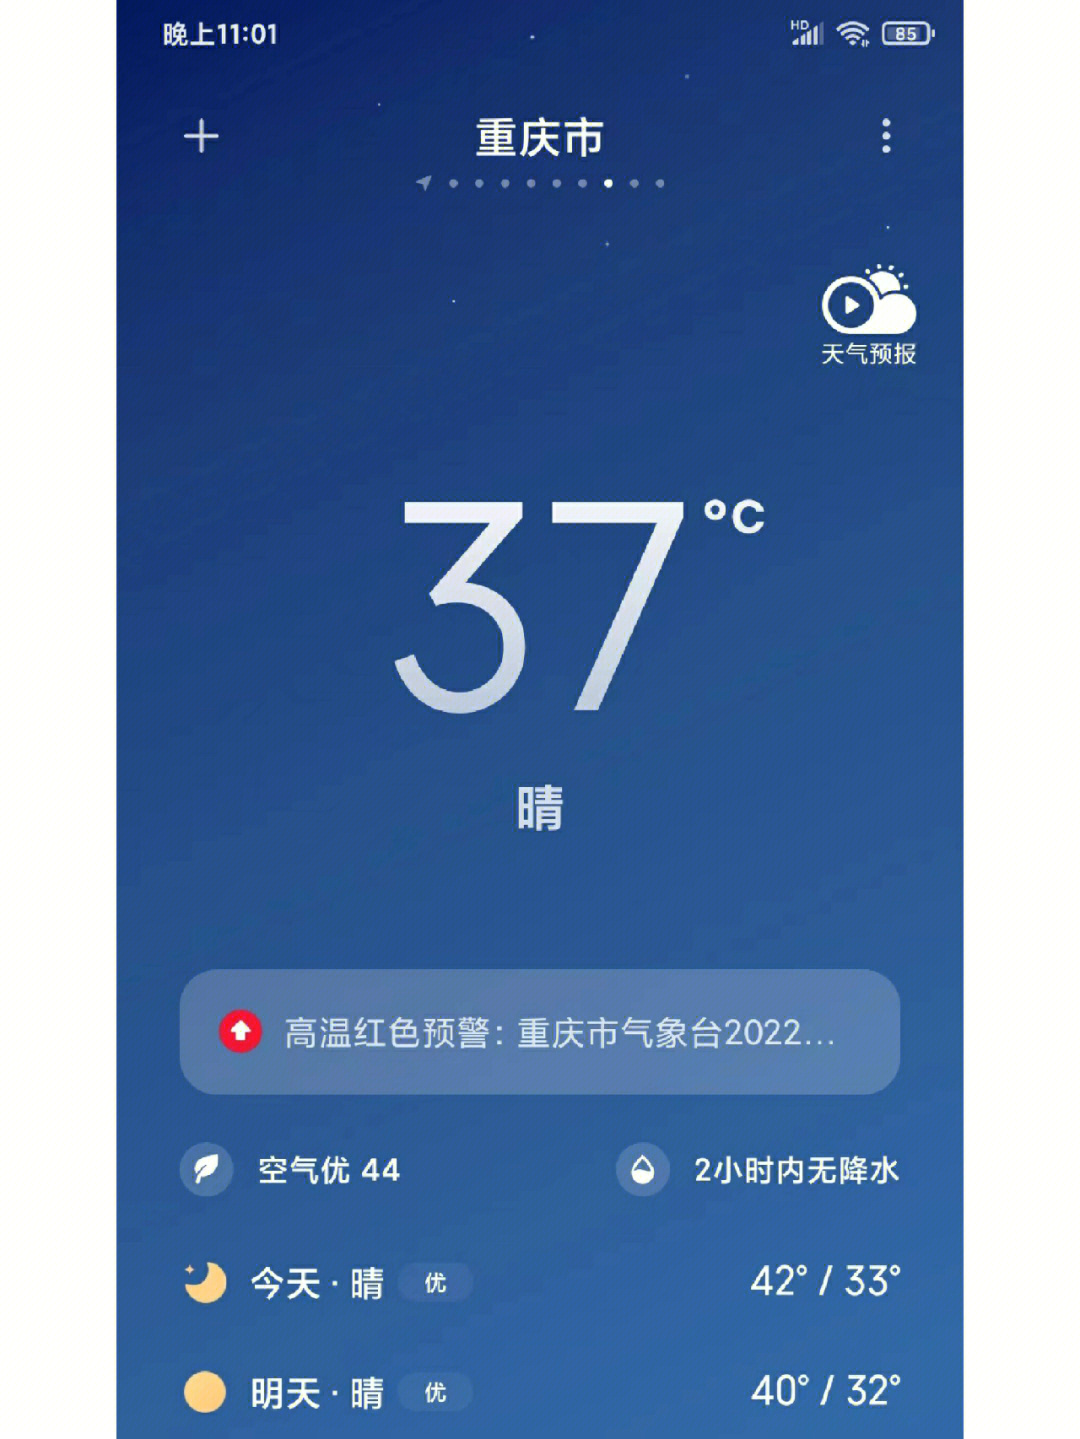 重庆天气预报今天查询图片